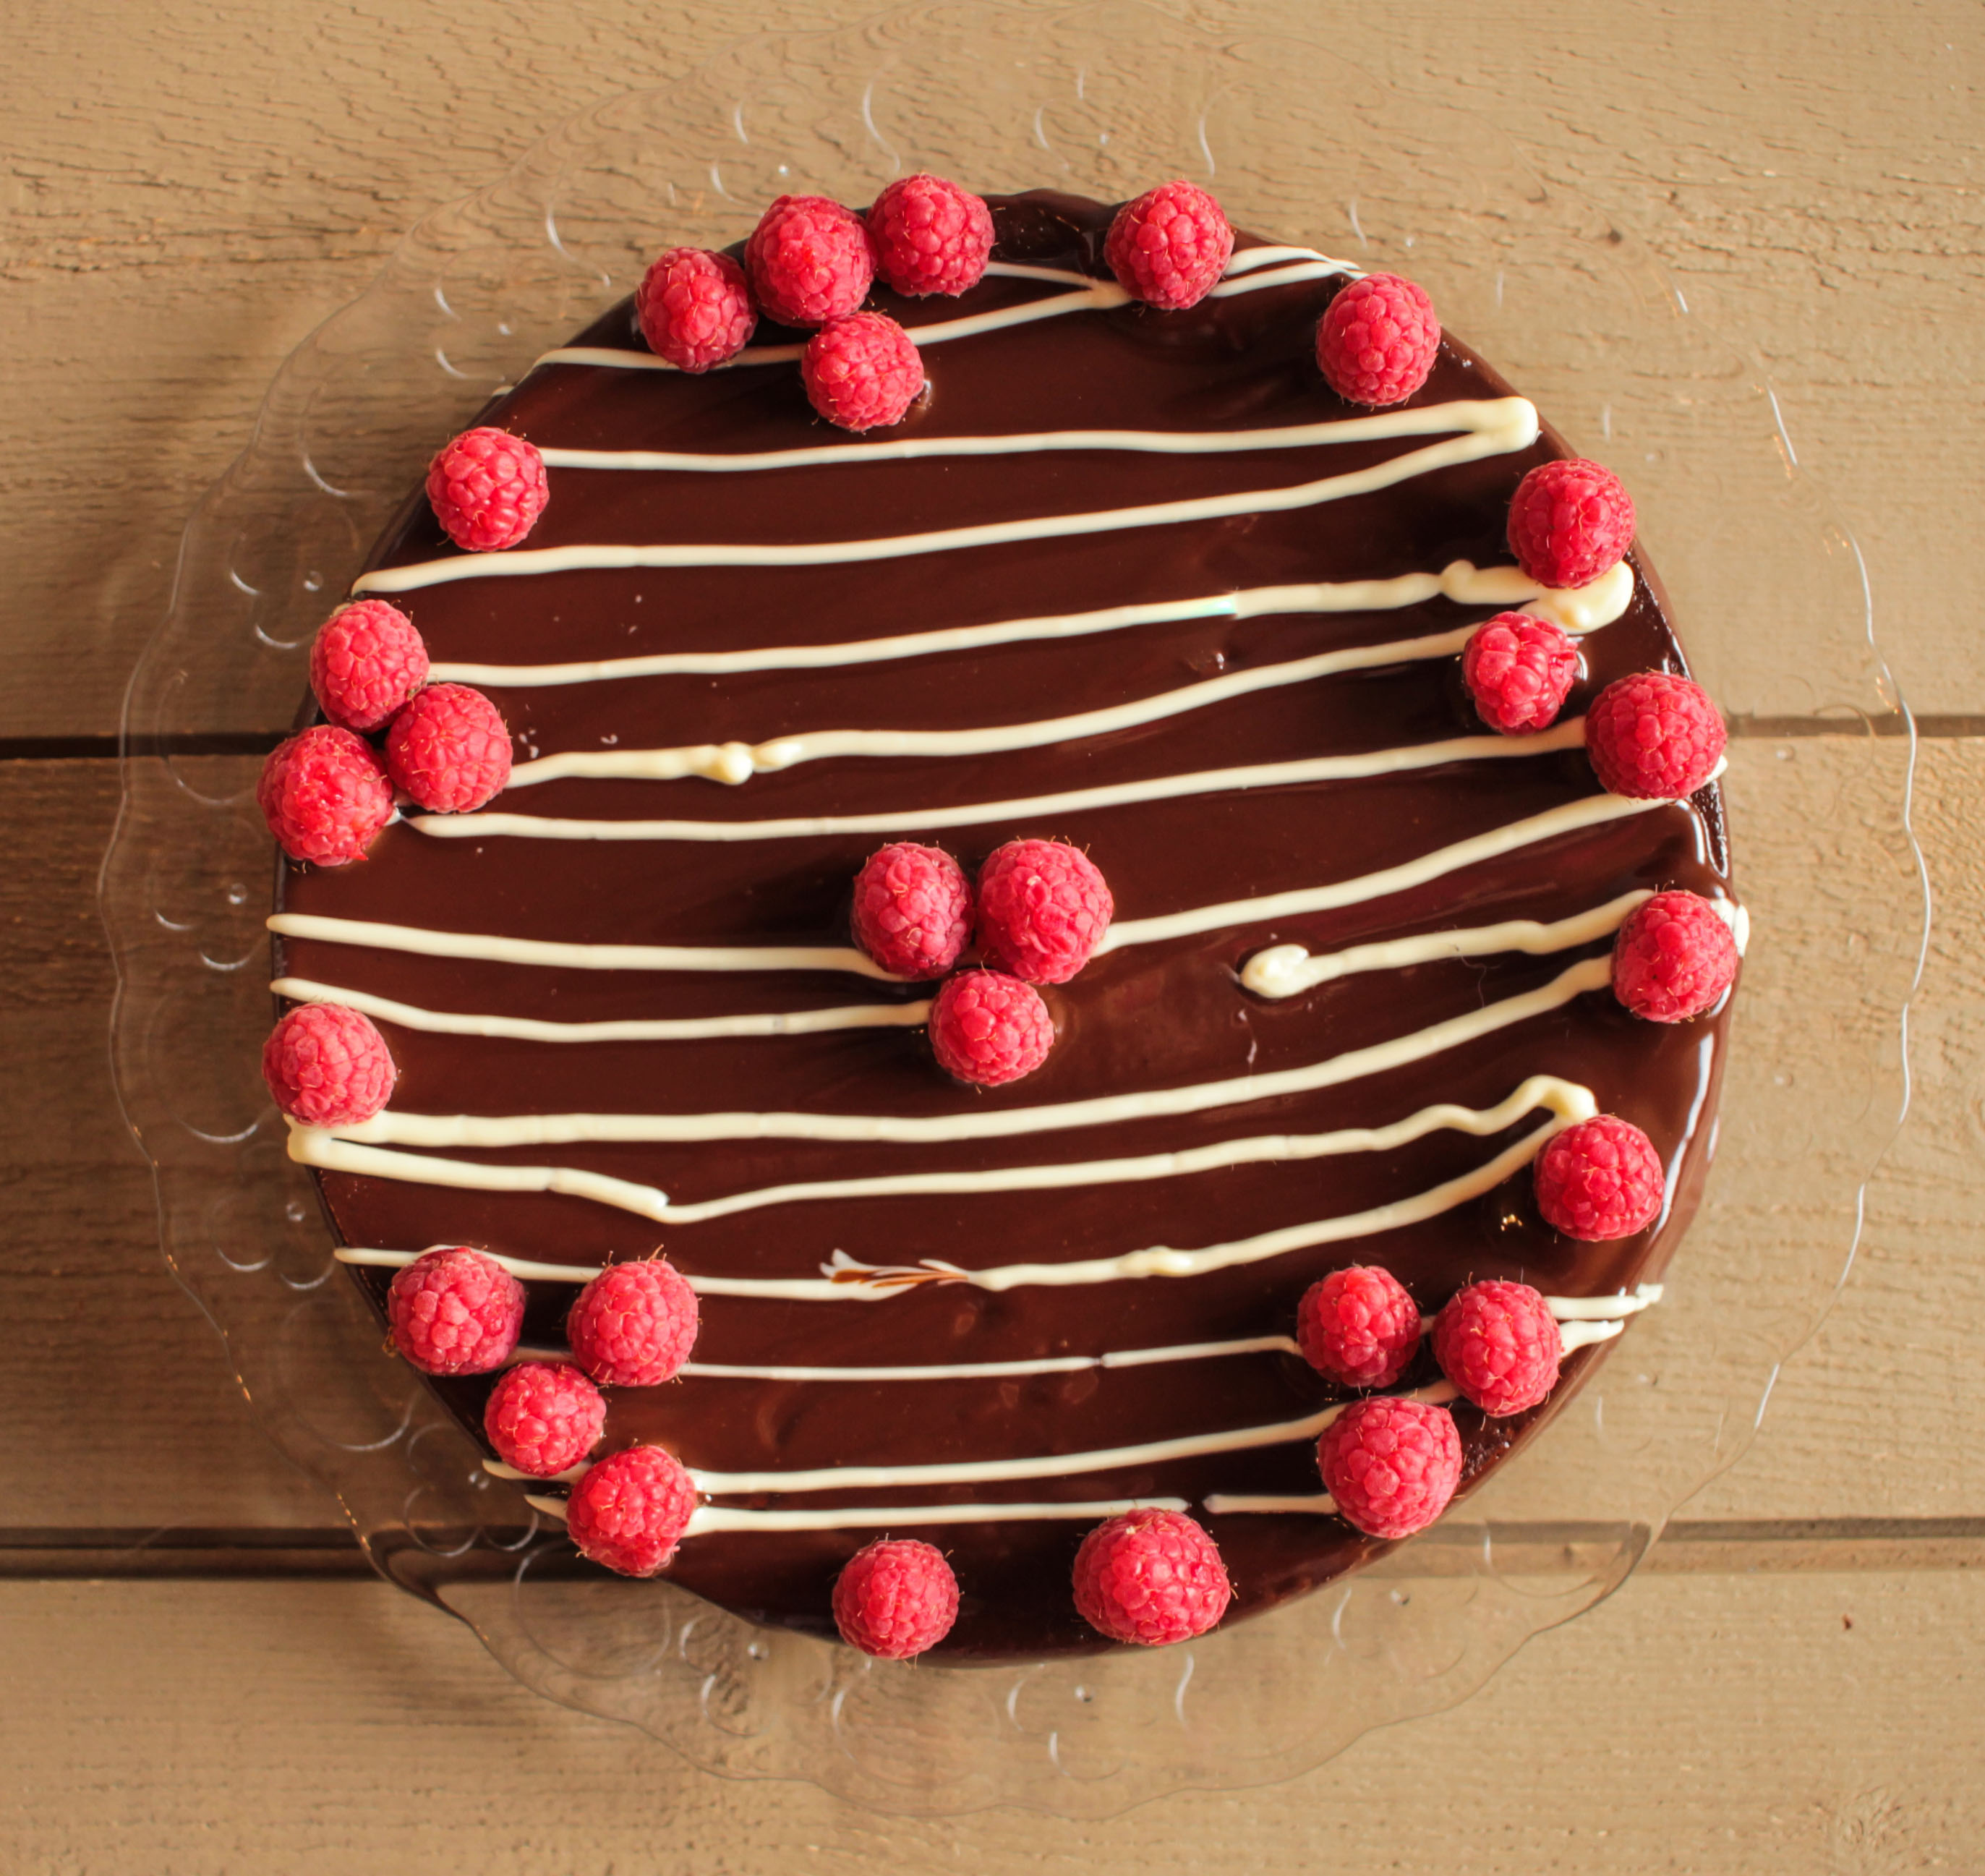 Gâteau d'anniversaire chocolat framboises